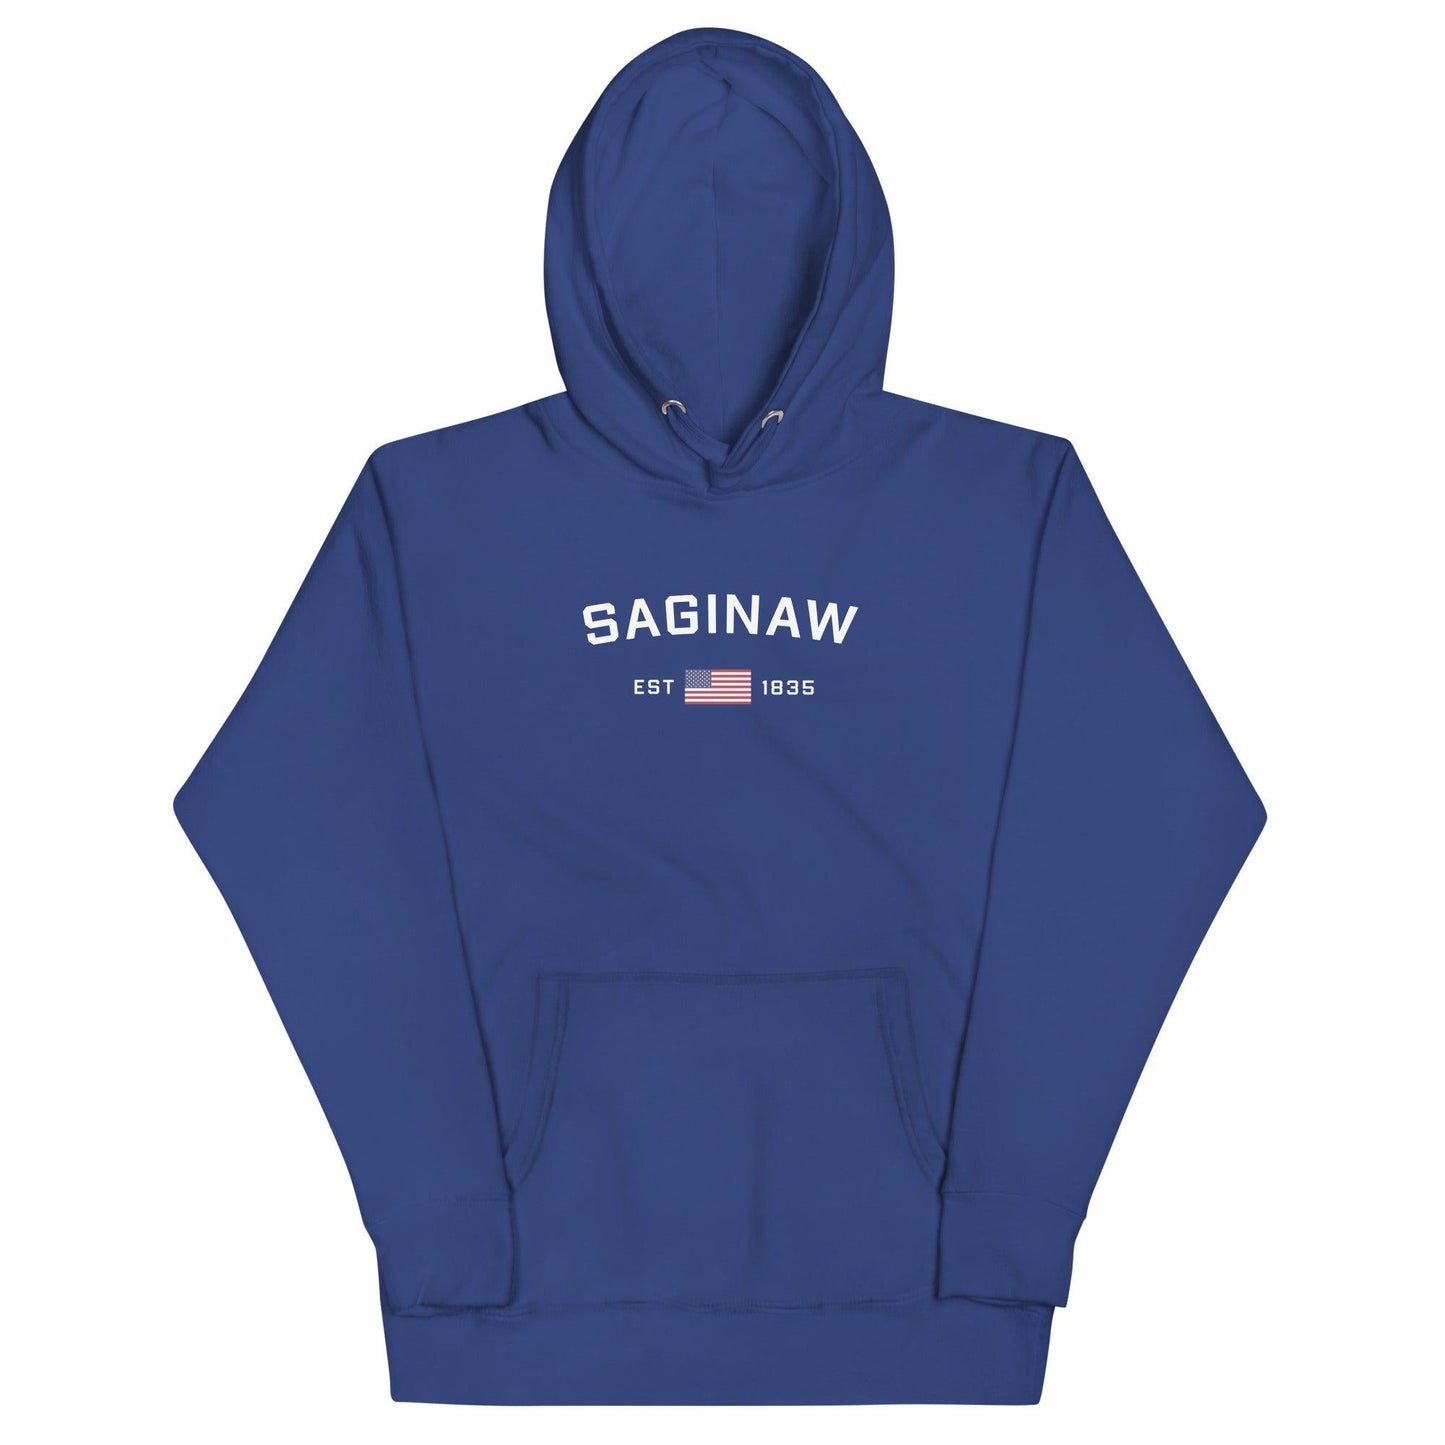 'Saginaw EST 1835' Hoodie (w/ USA Flag Outline) | Unisex Premium - Circumspice Michigan